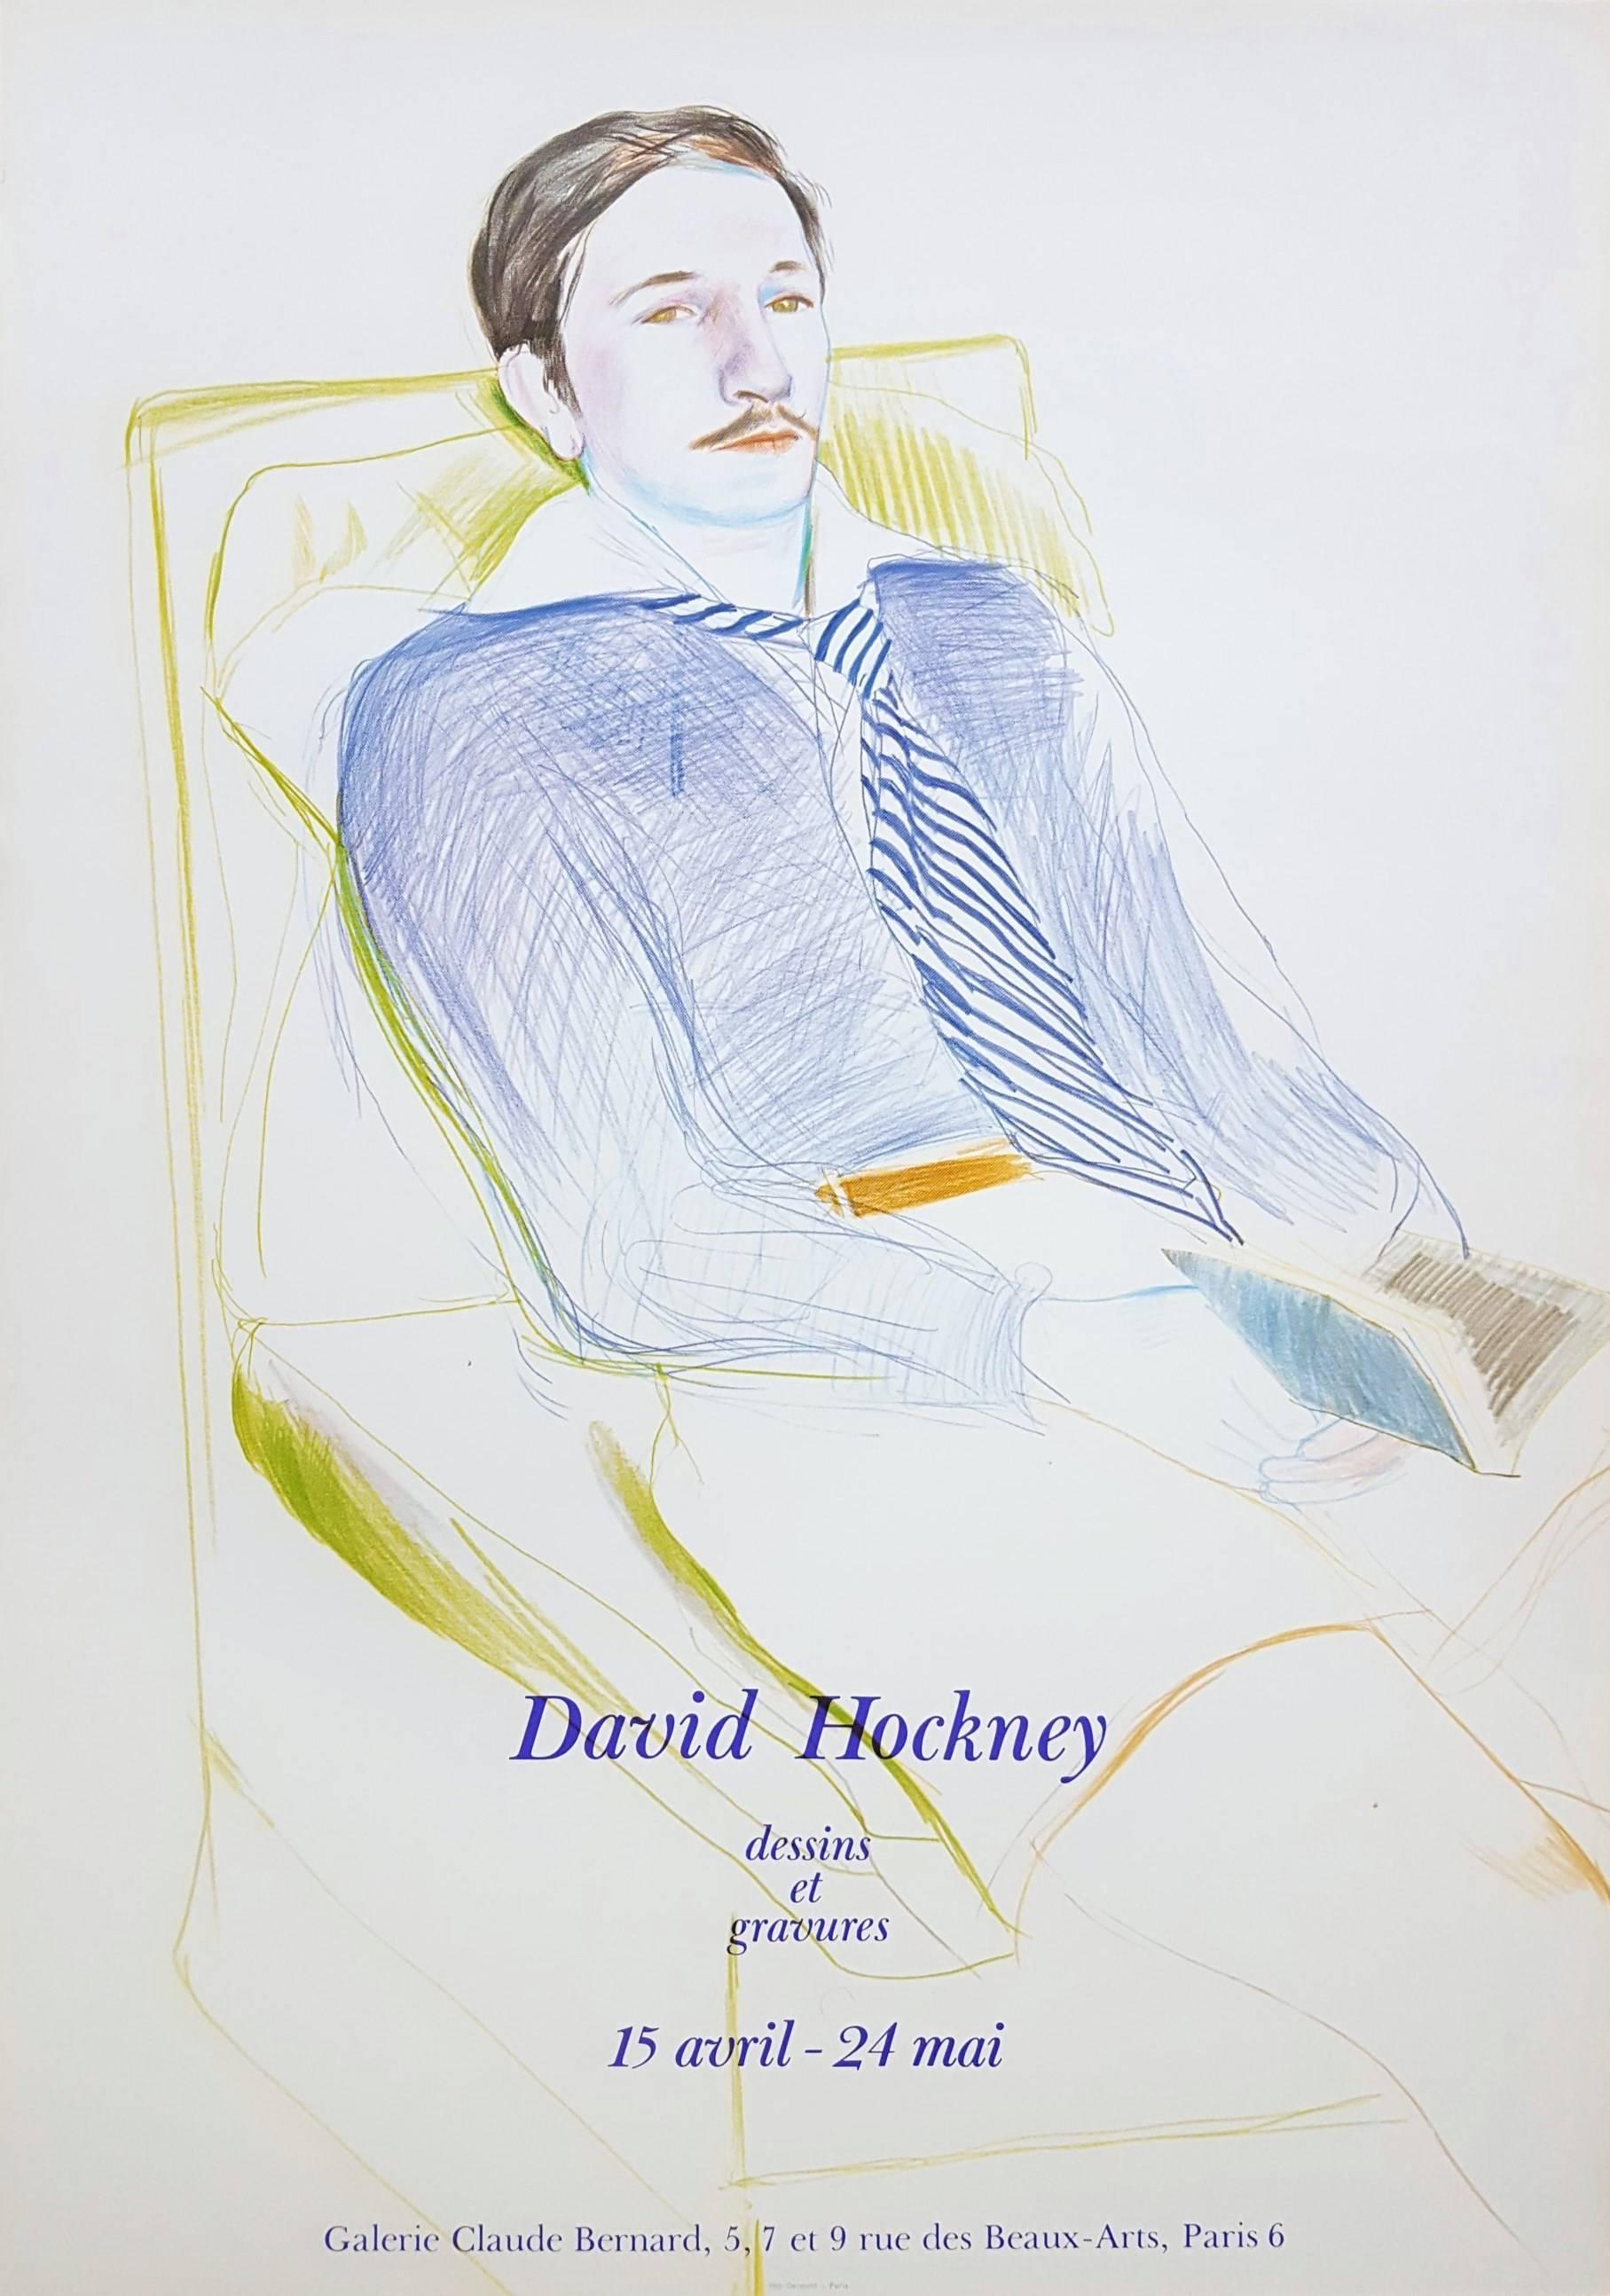 (after) David Hockney Portrait Print - Jacques de Bascher de Beaumarchais